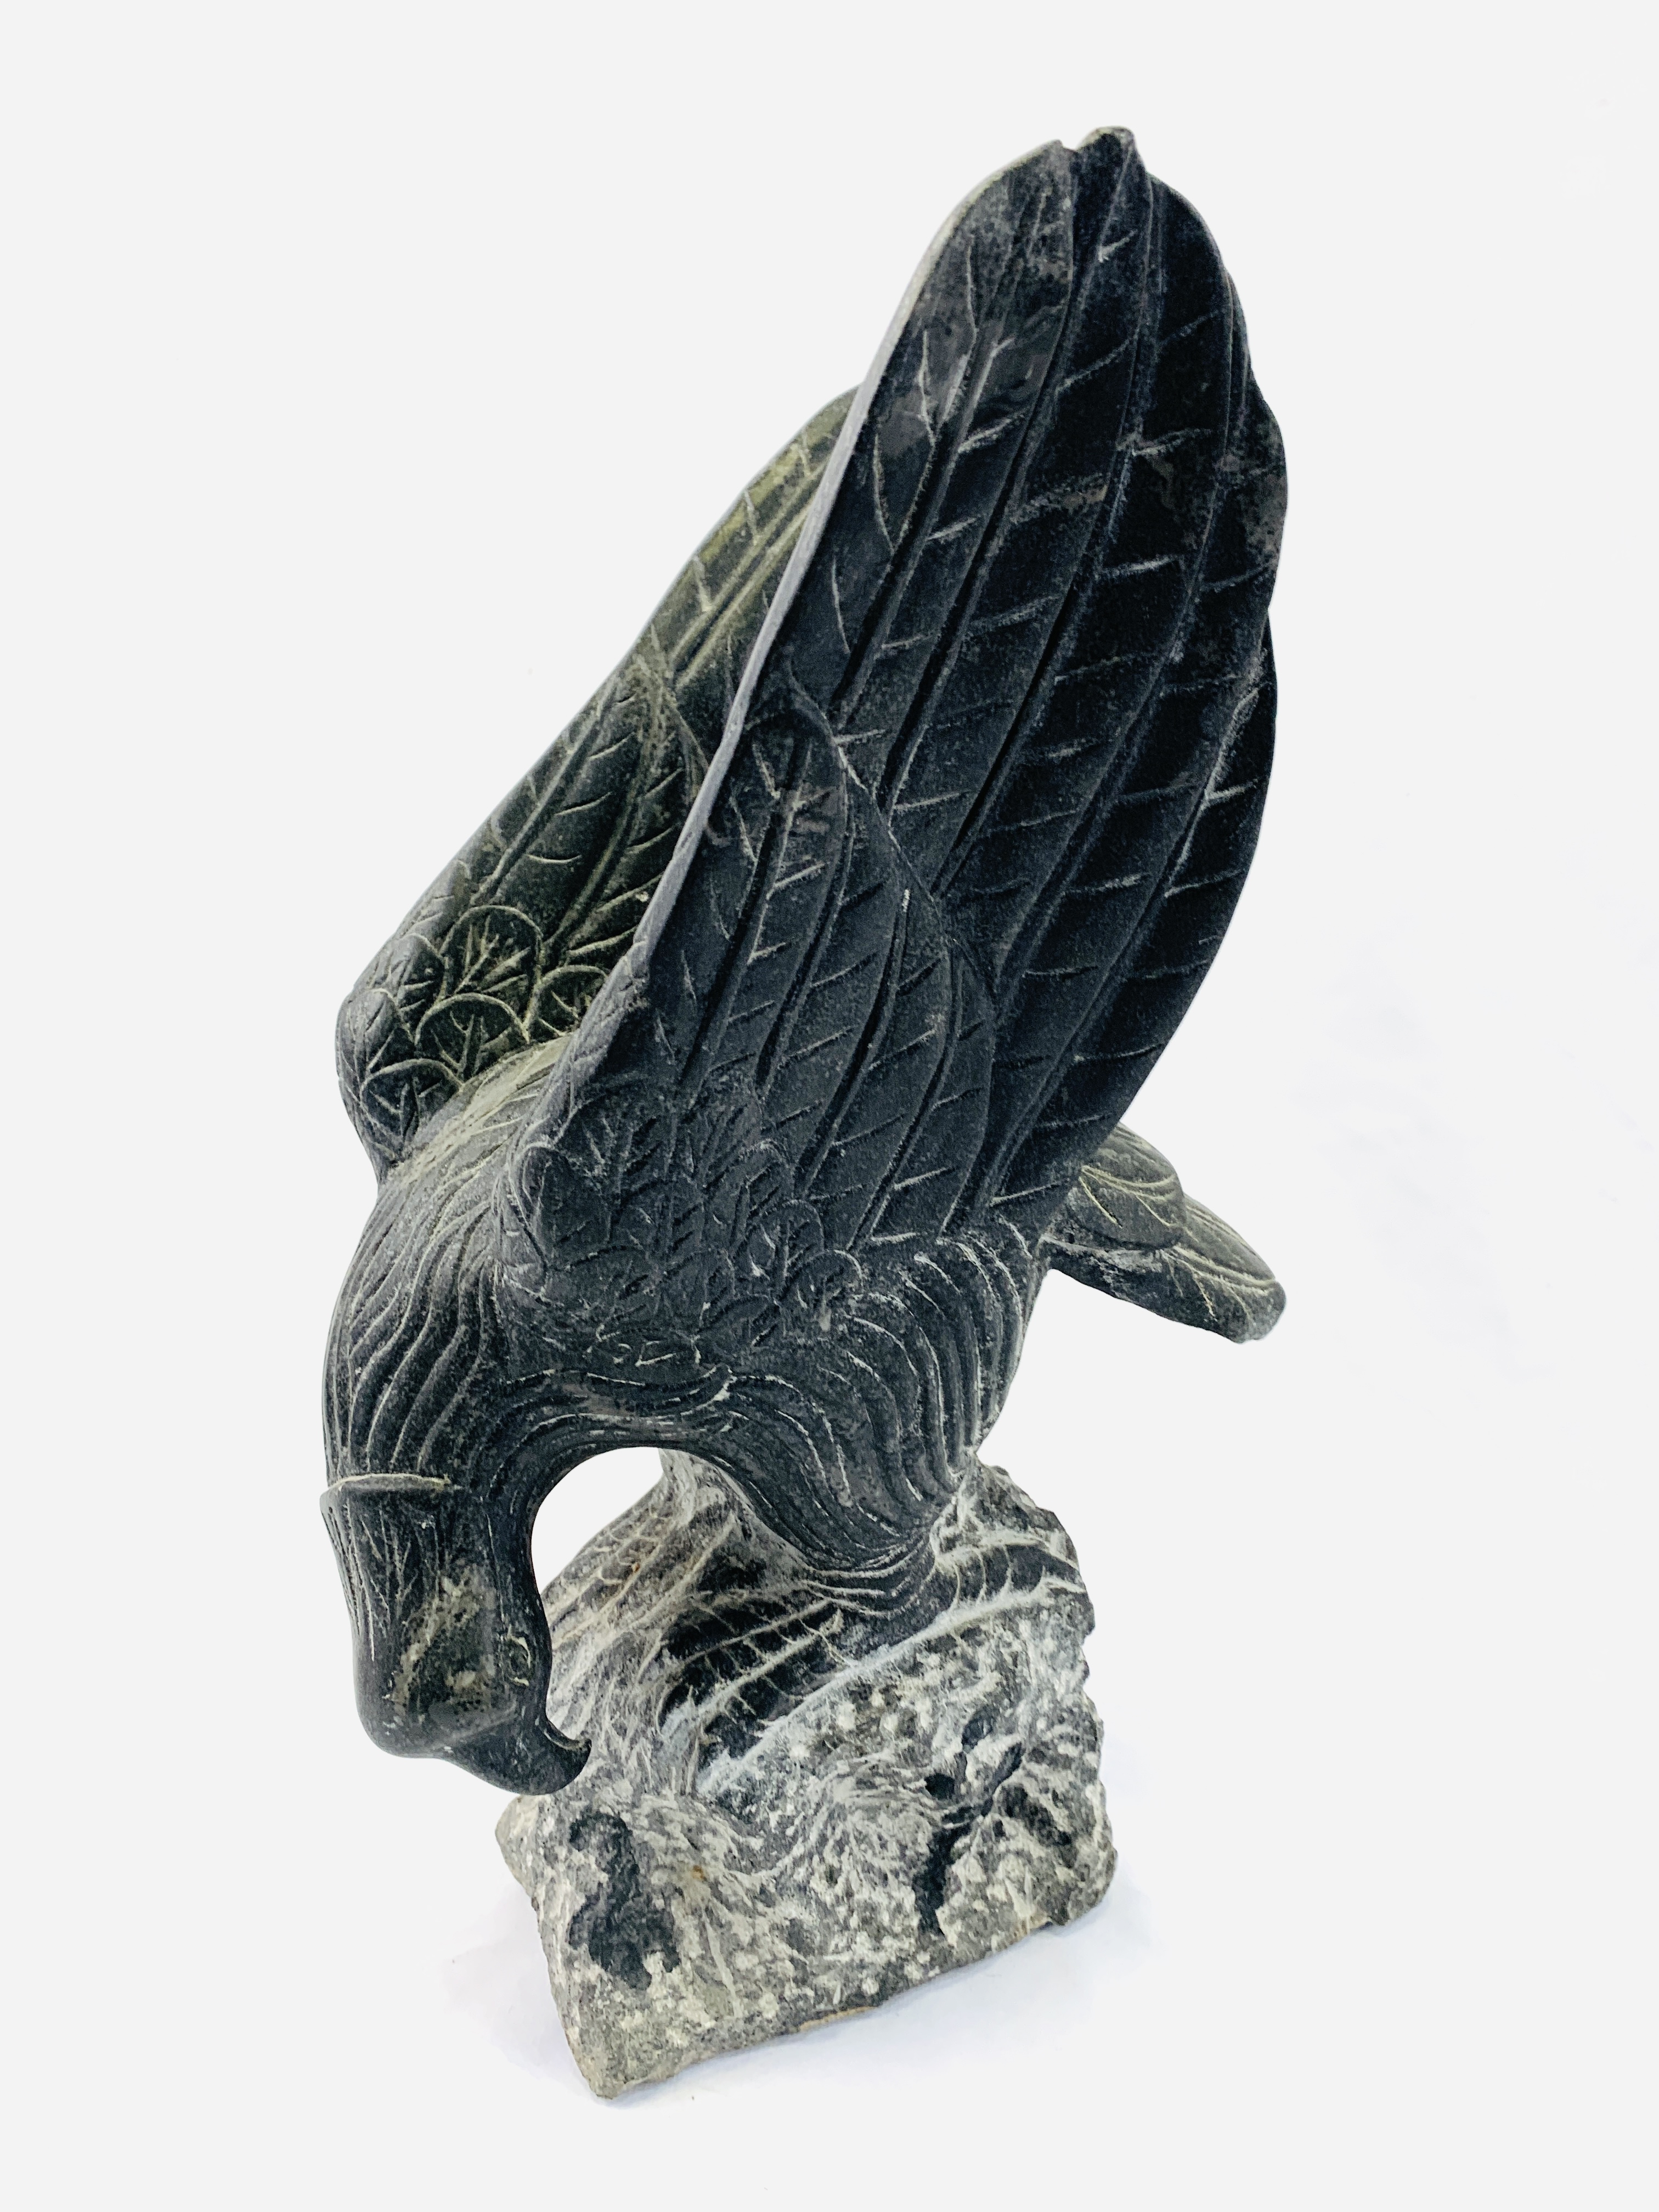 A stone eagle - Image 4 of 6